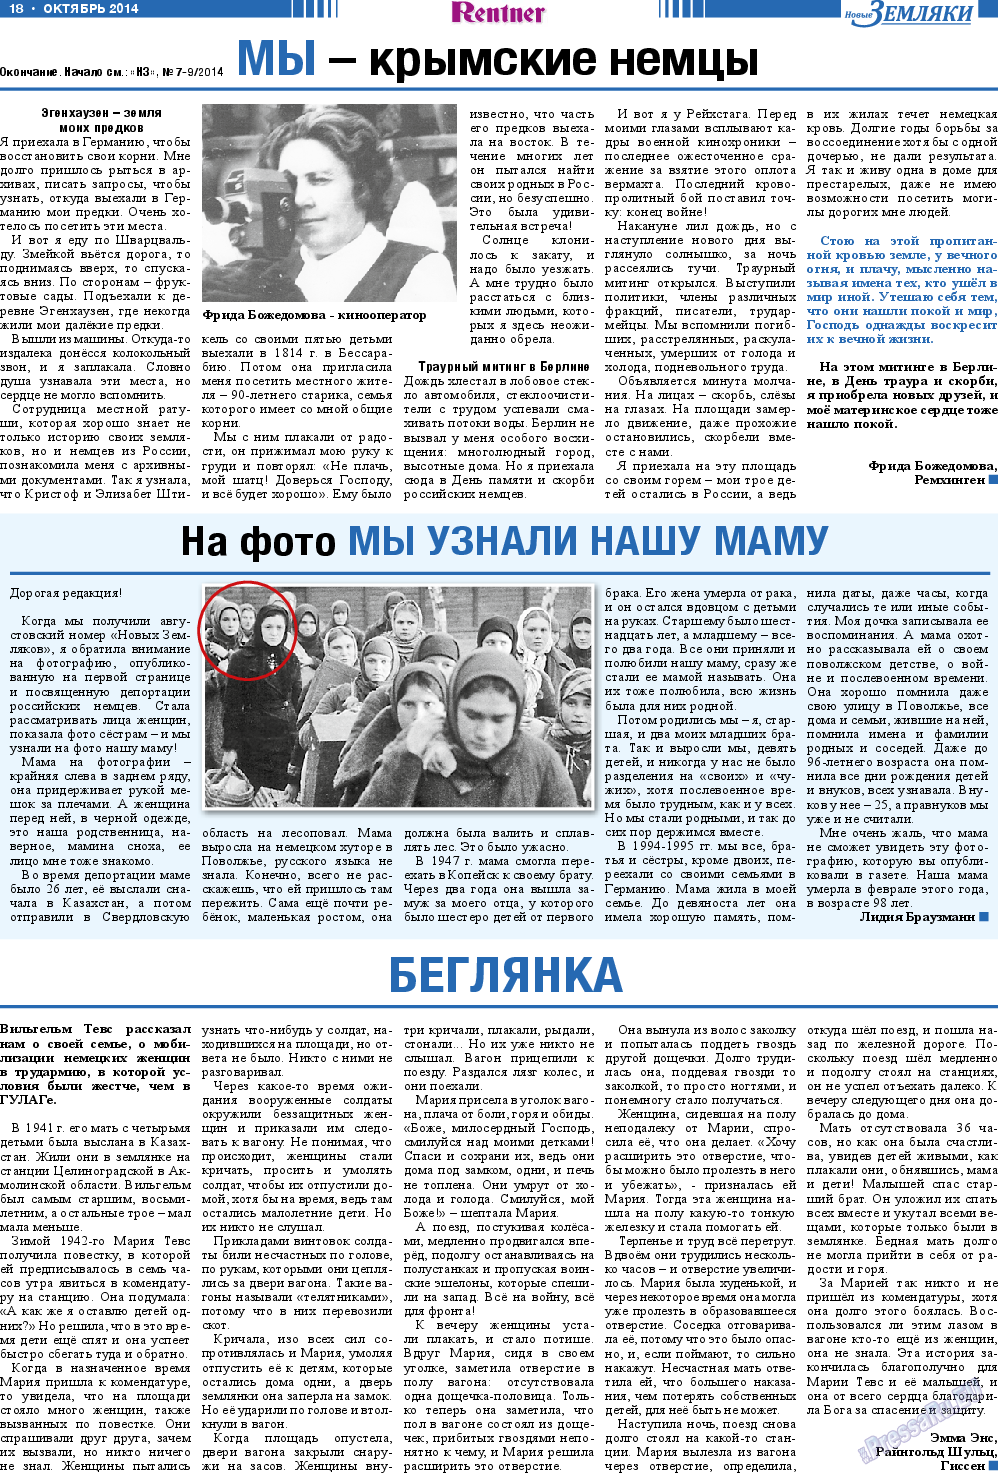 Новые Земляки, газета. 2014 №10 стр.18